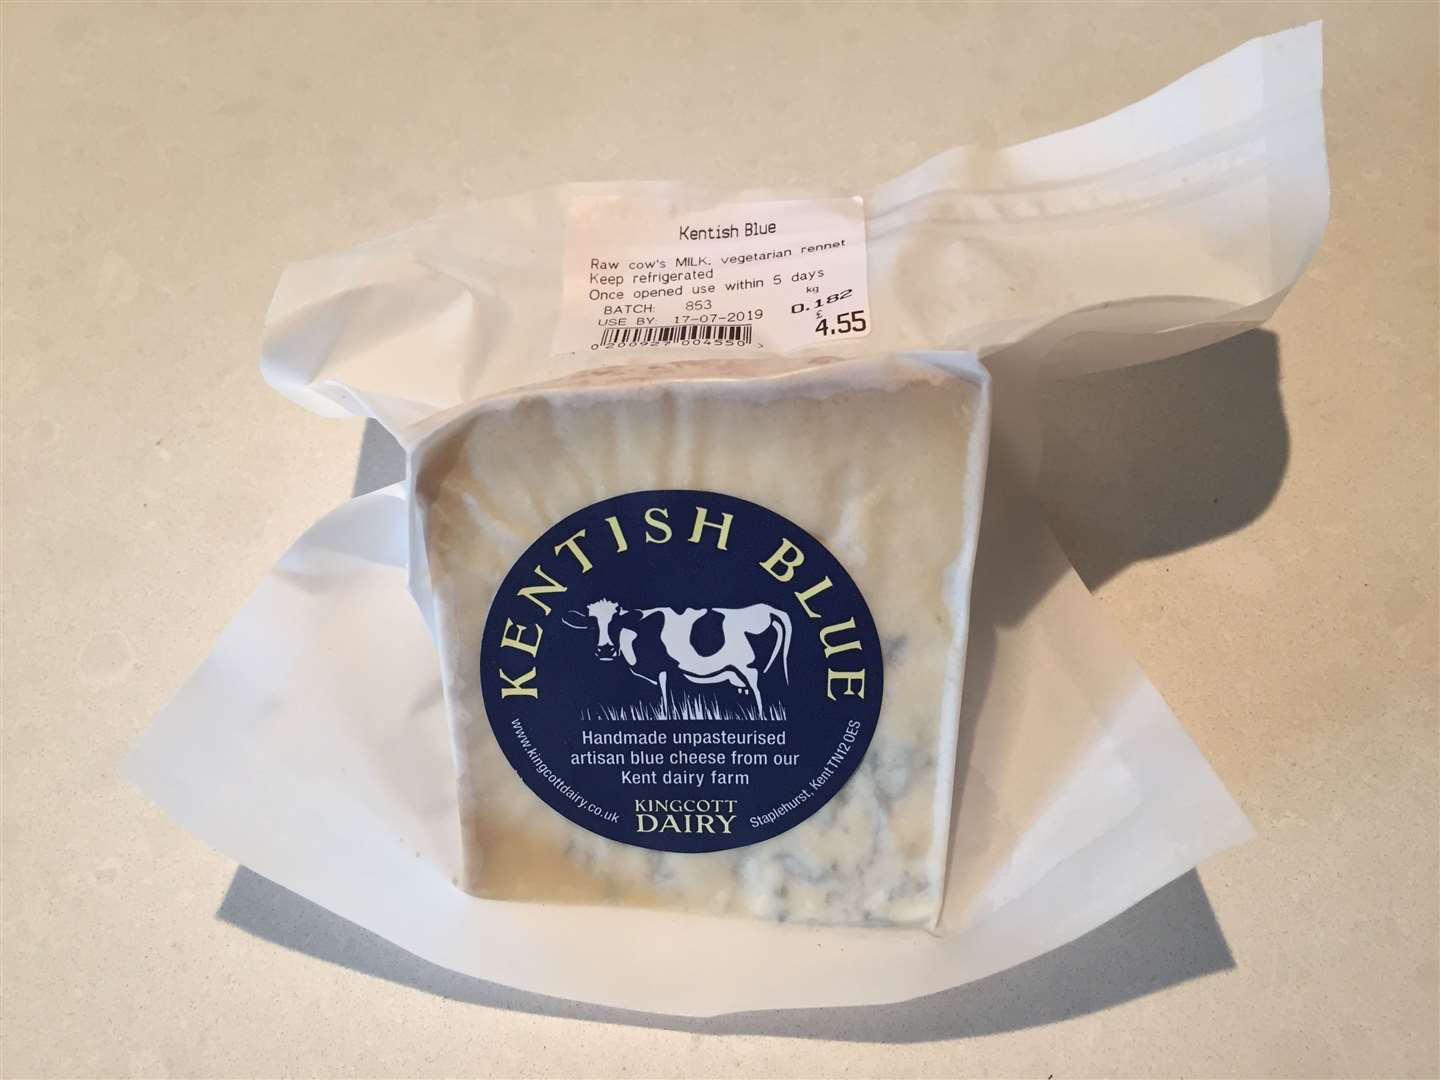 Blue cheese from Kingcott Dairy in Staplehurst - £4.55